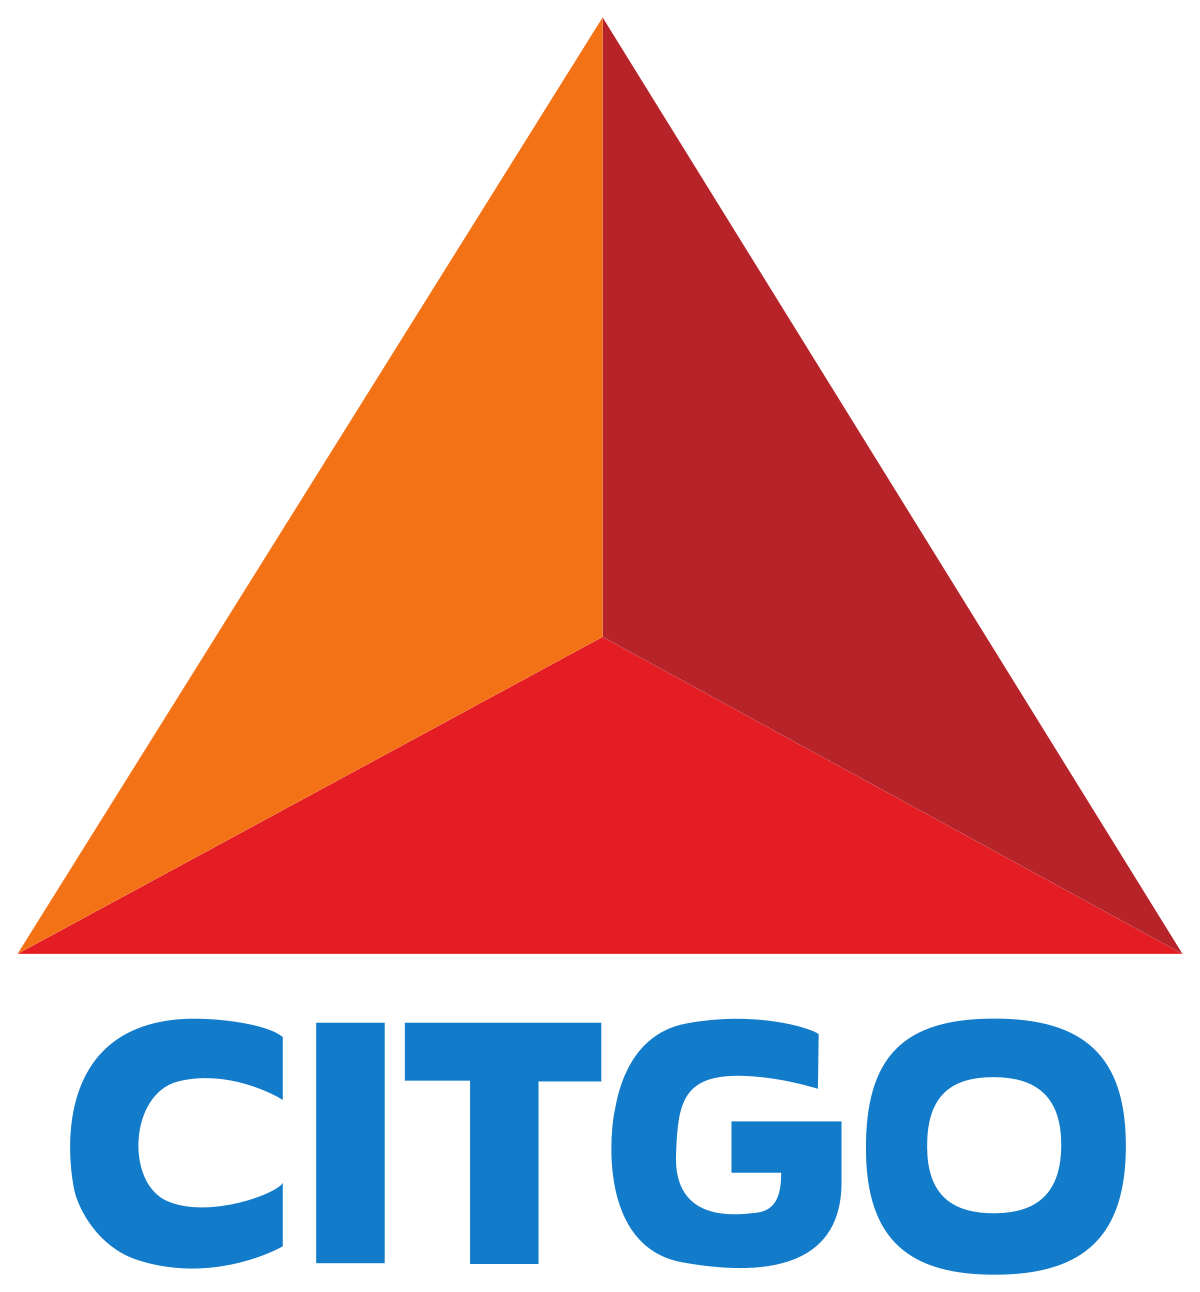 Citgo Gas Logo - Citgo